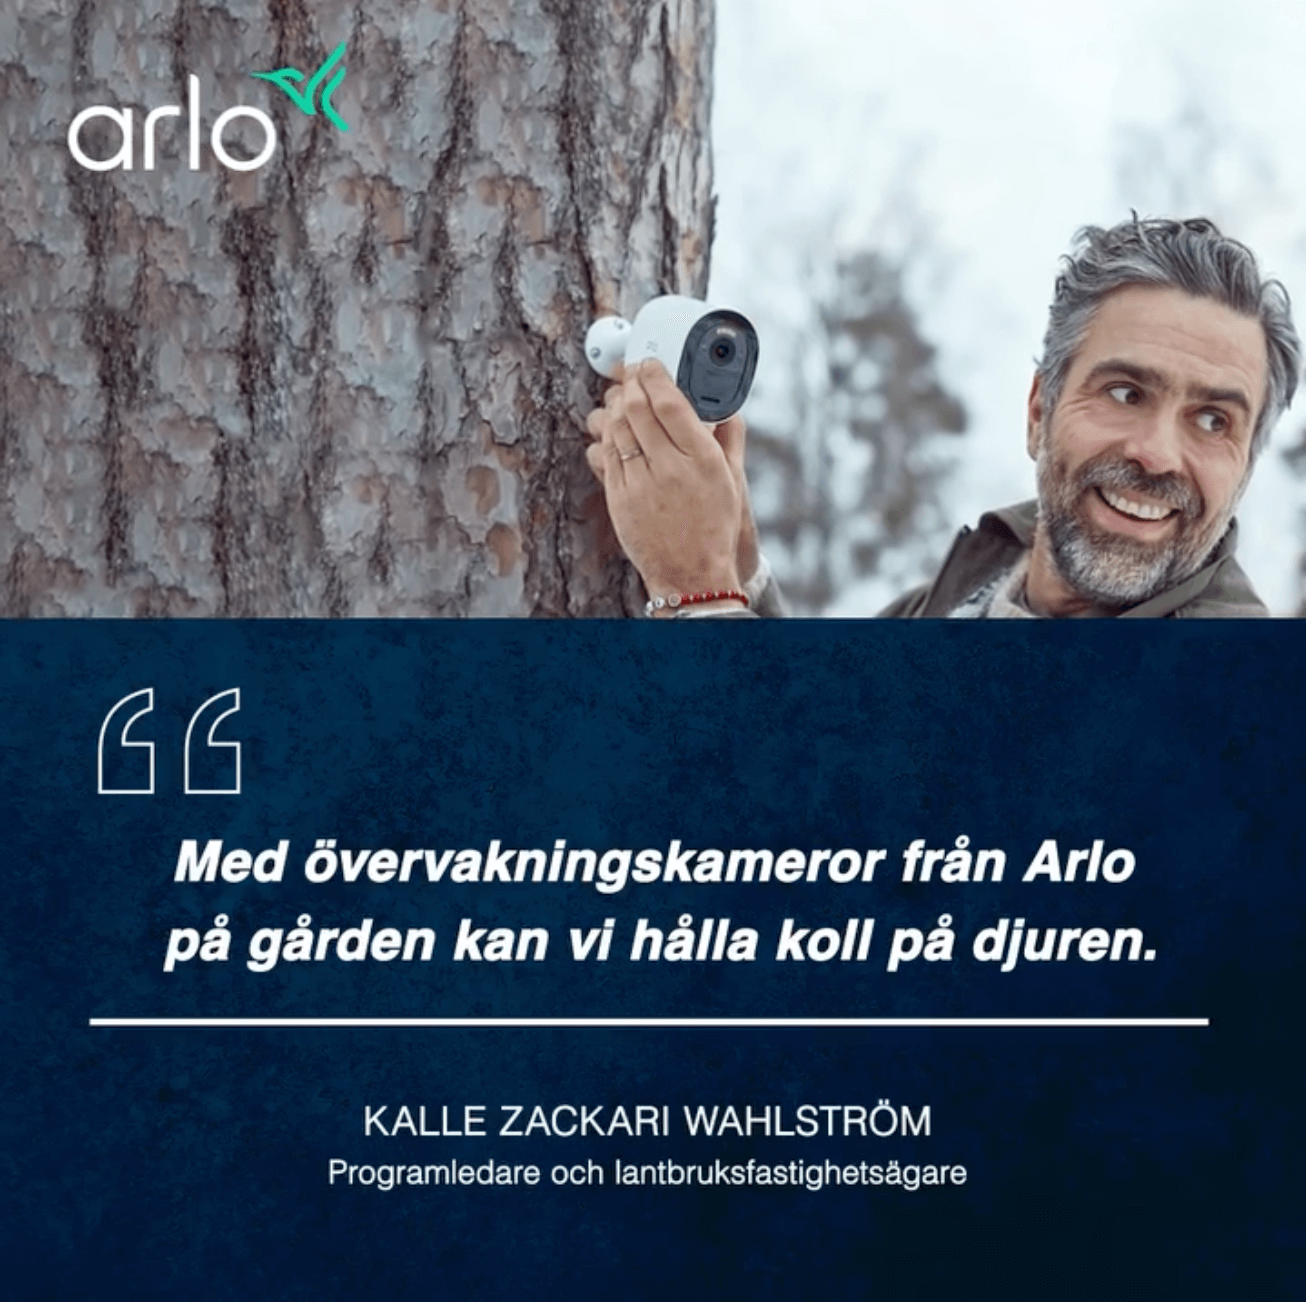 Länk till ett videoinlägg på Arlo Instagram med ett citat från ambassadören Kalle Zackari Wahlström om Arlo-säkerhetsprodukter.